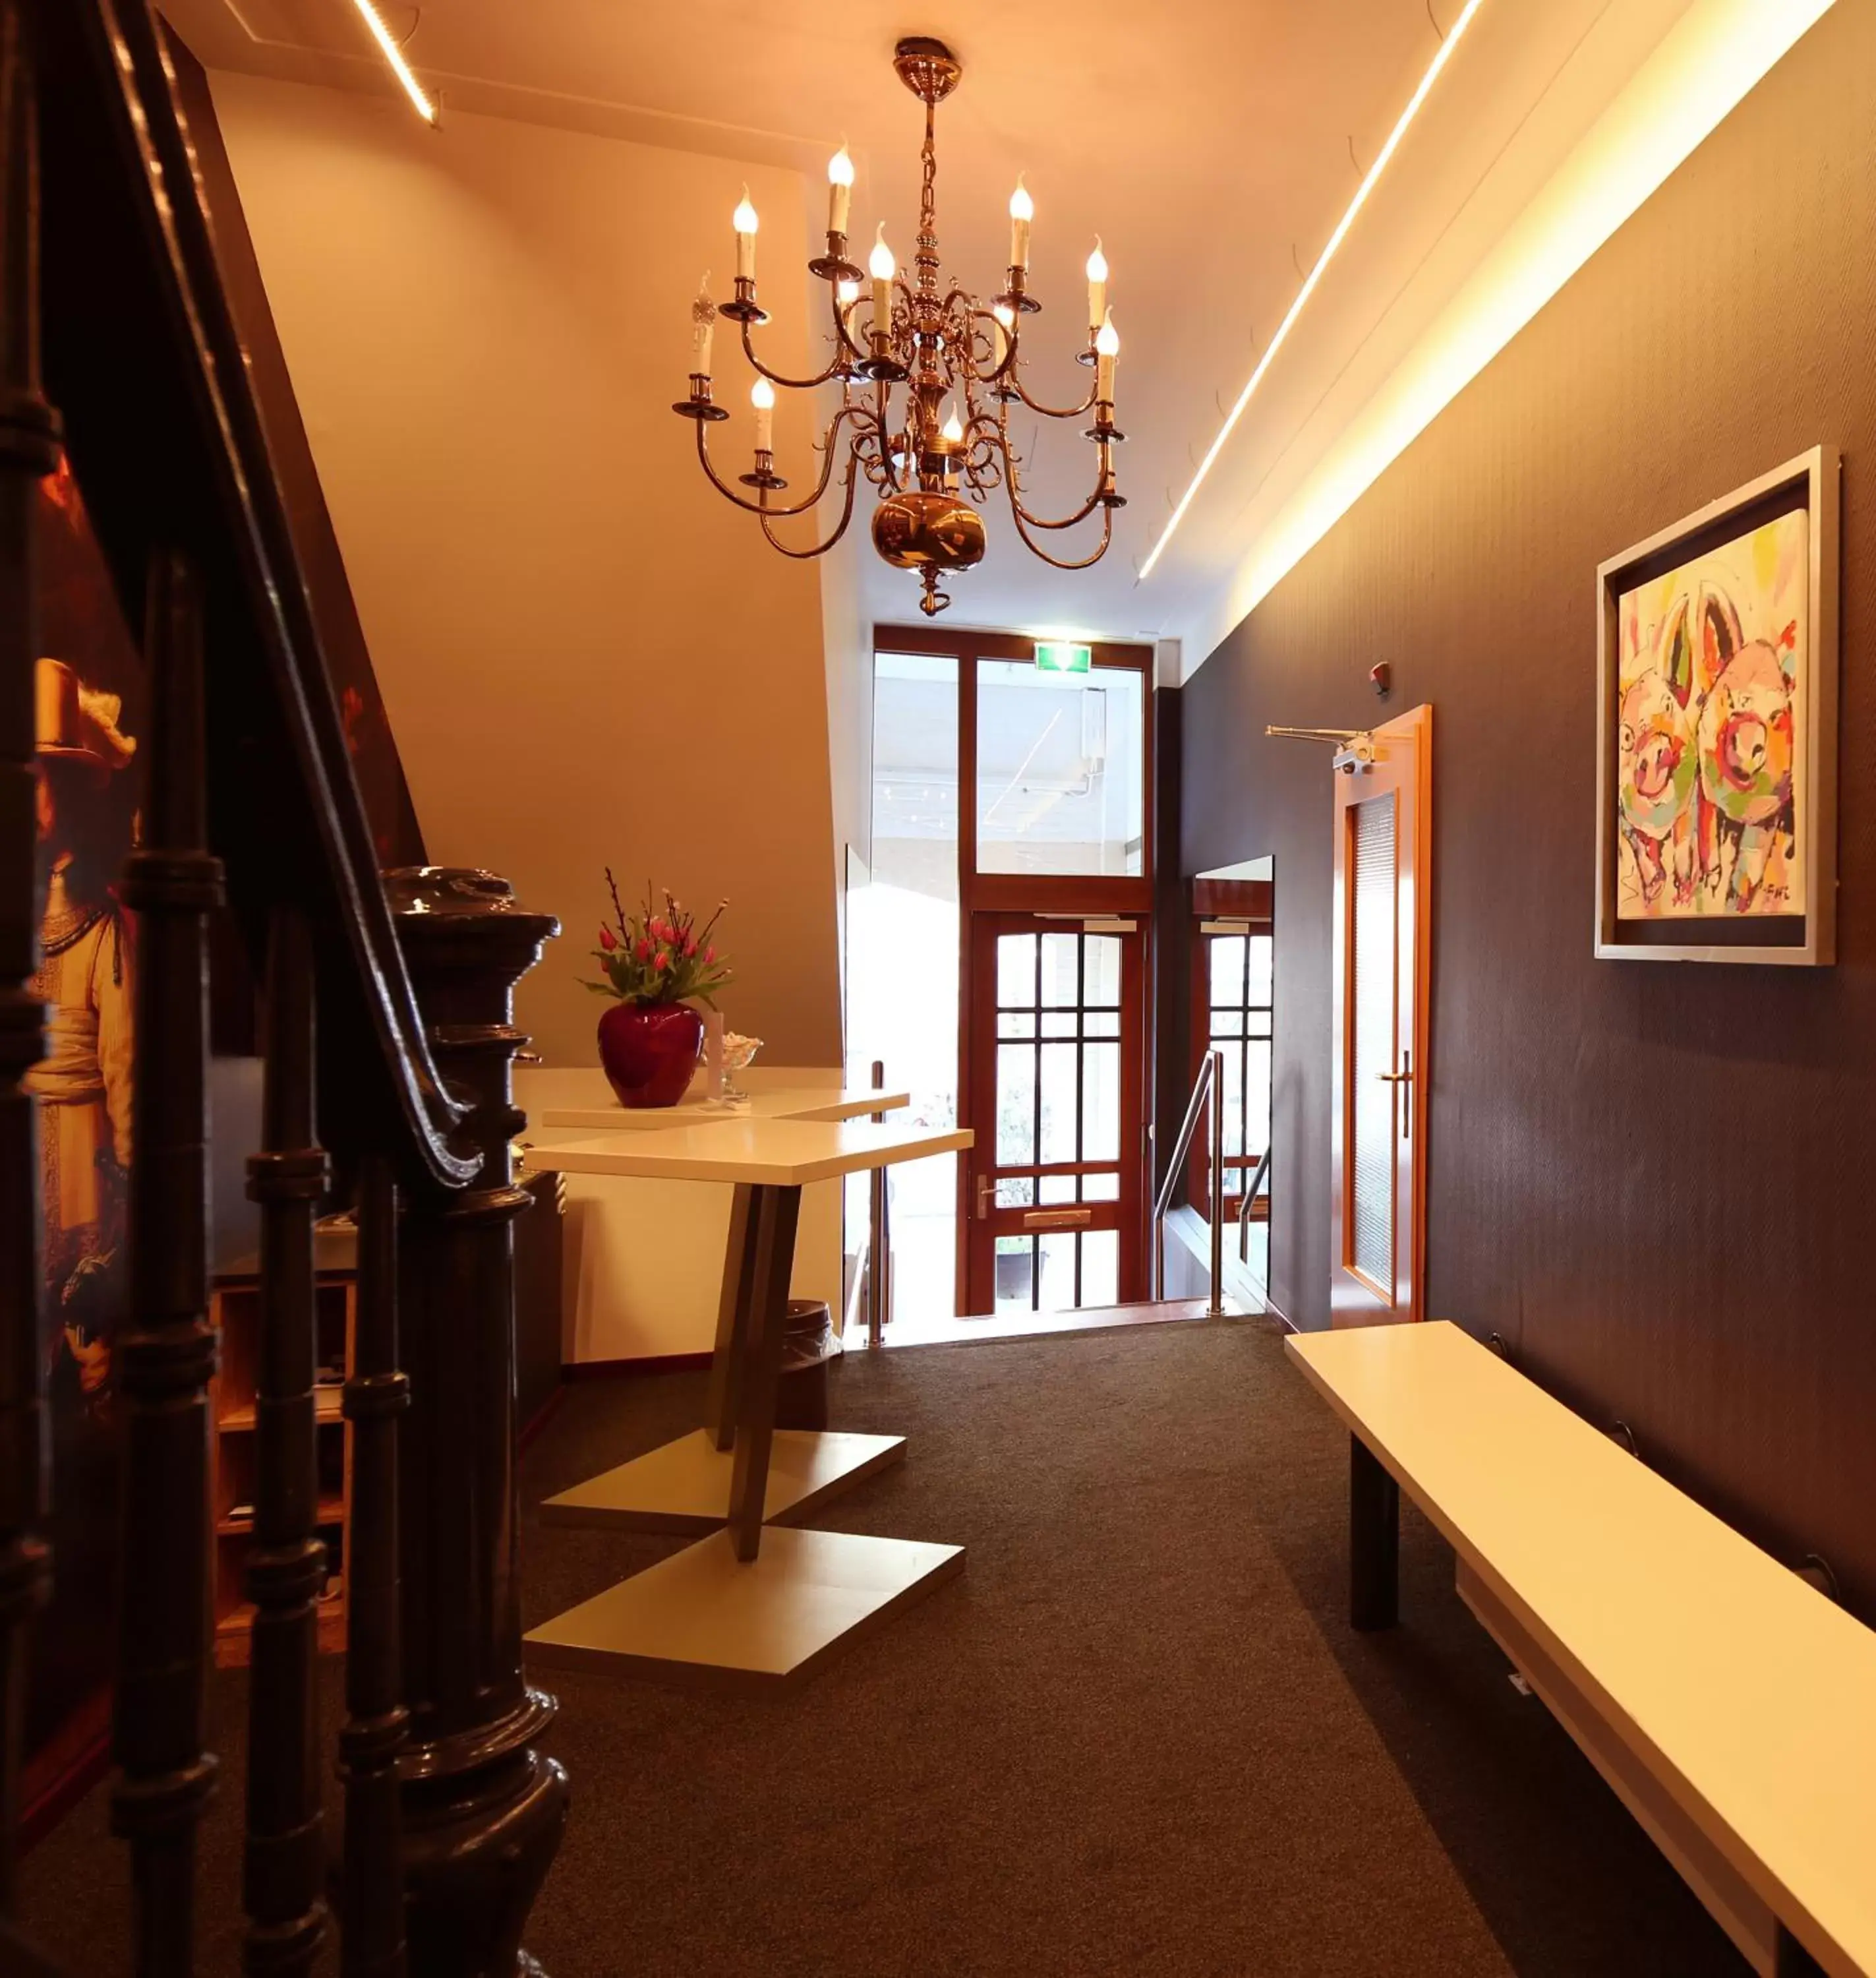 Lobby or reception, Lobby/Reception in Hotel Fita